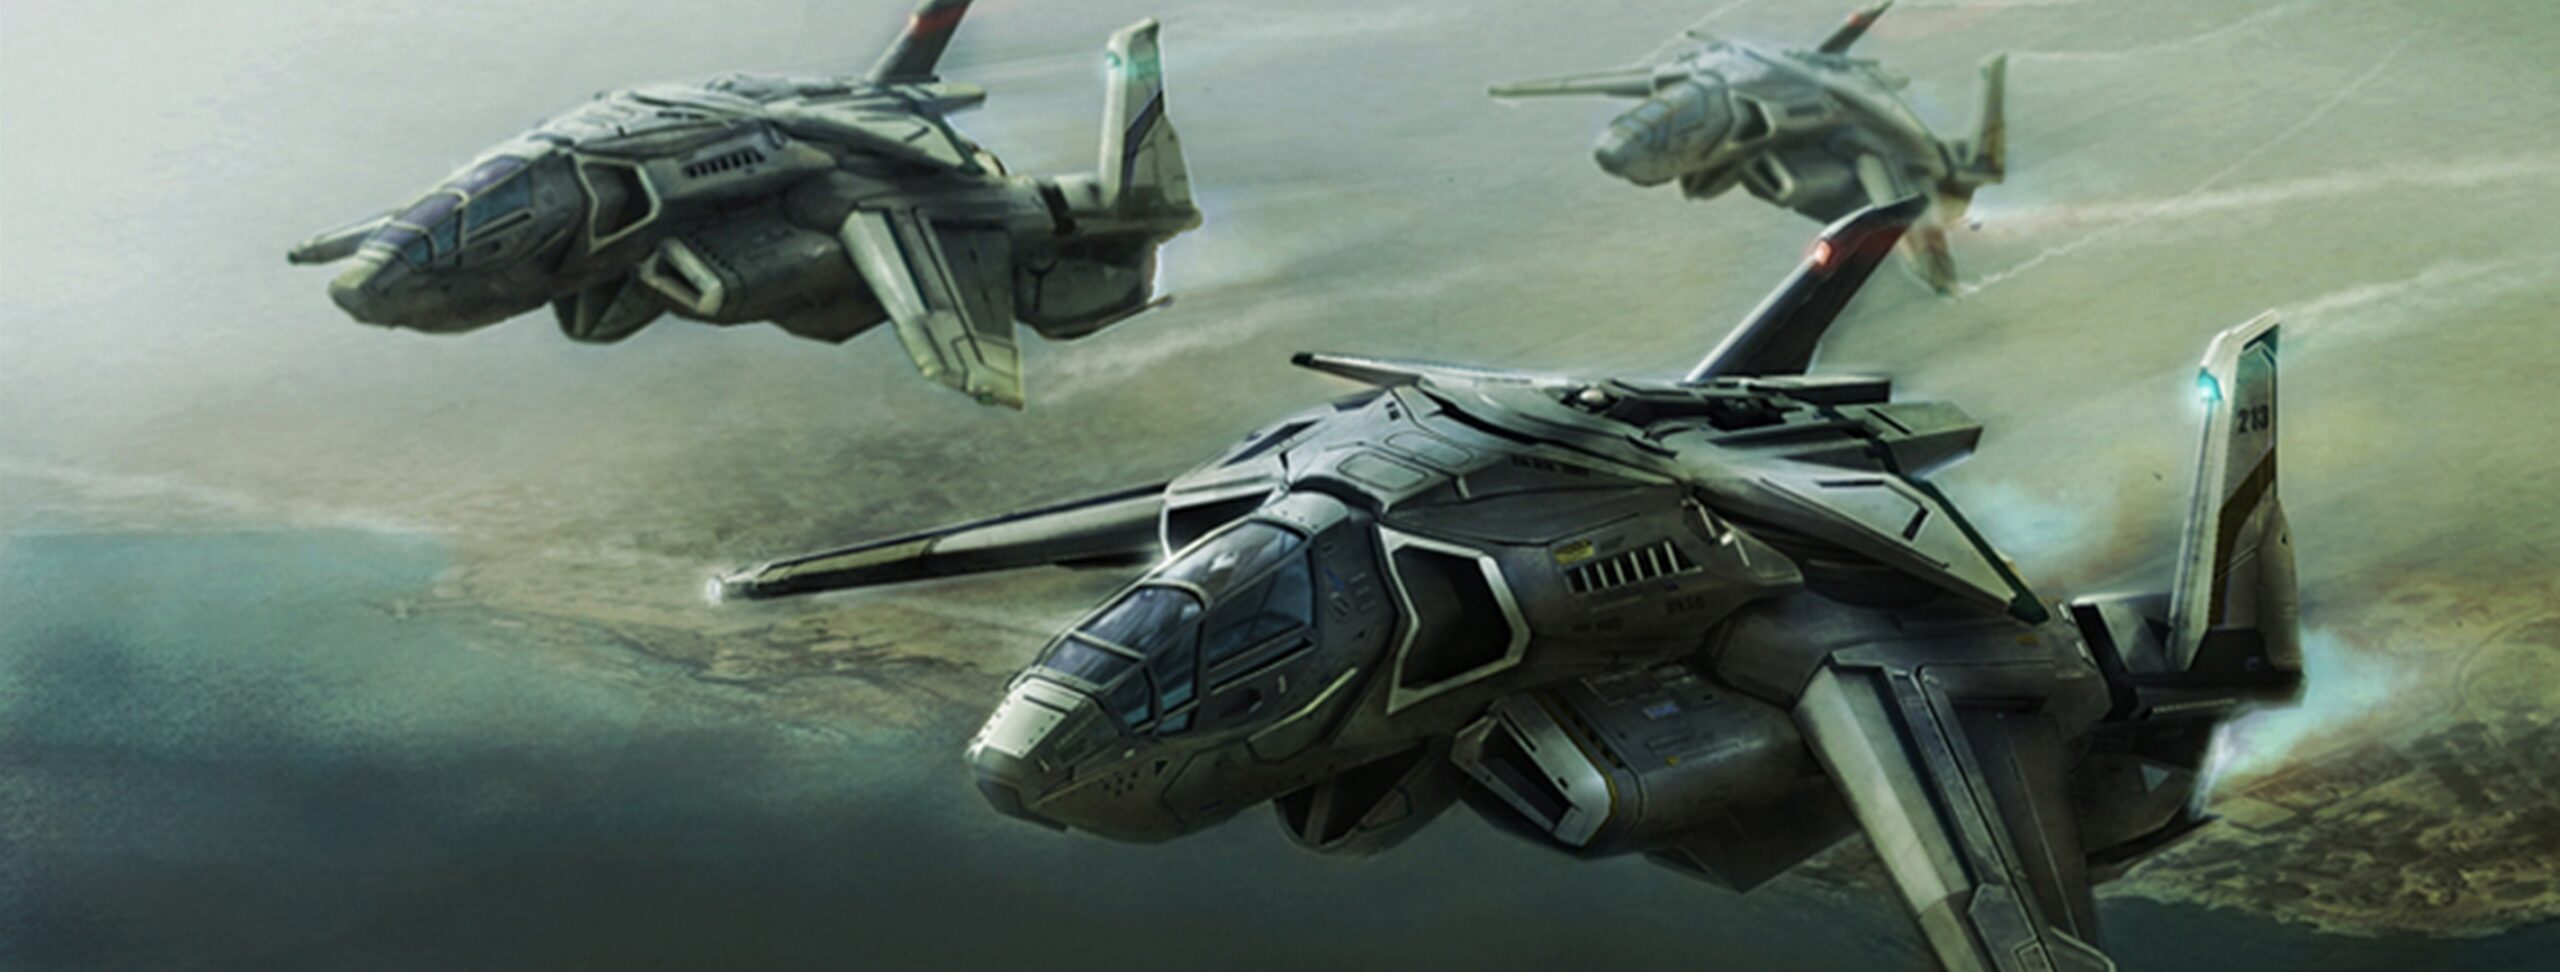 Halo Wars concept art of the Falcata fighter